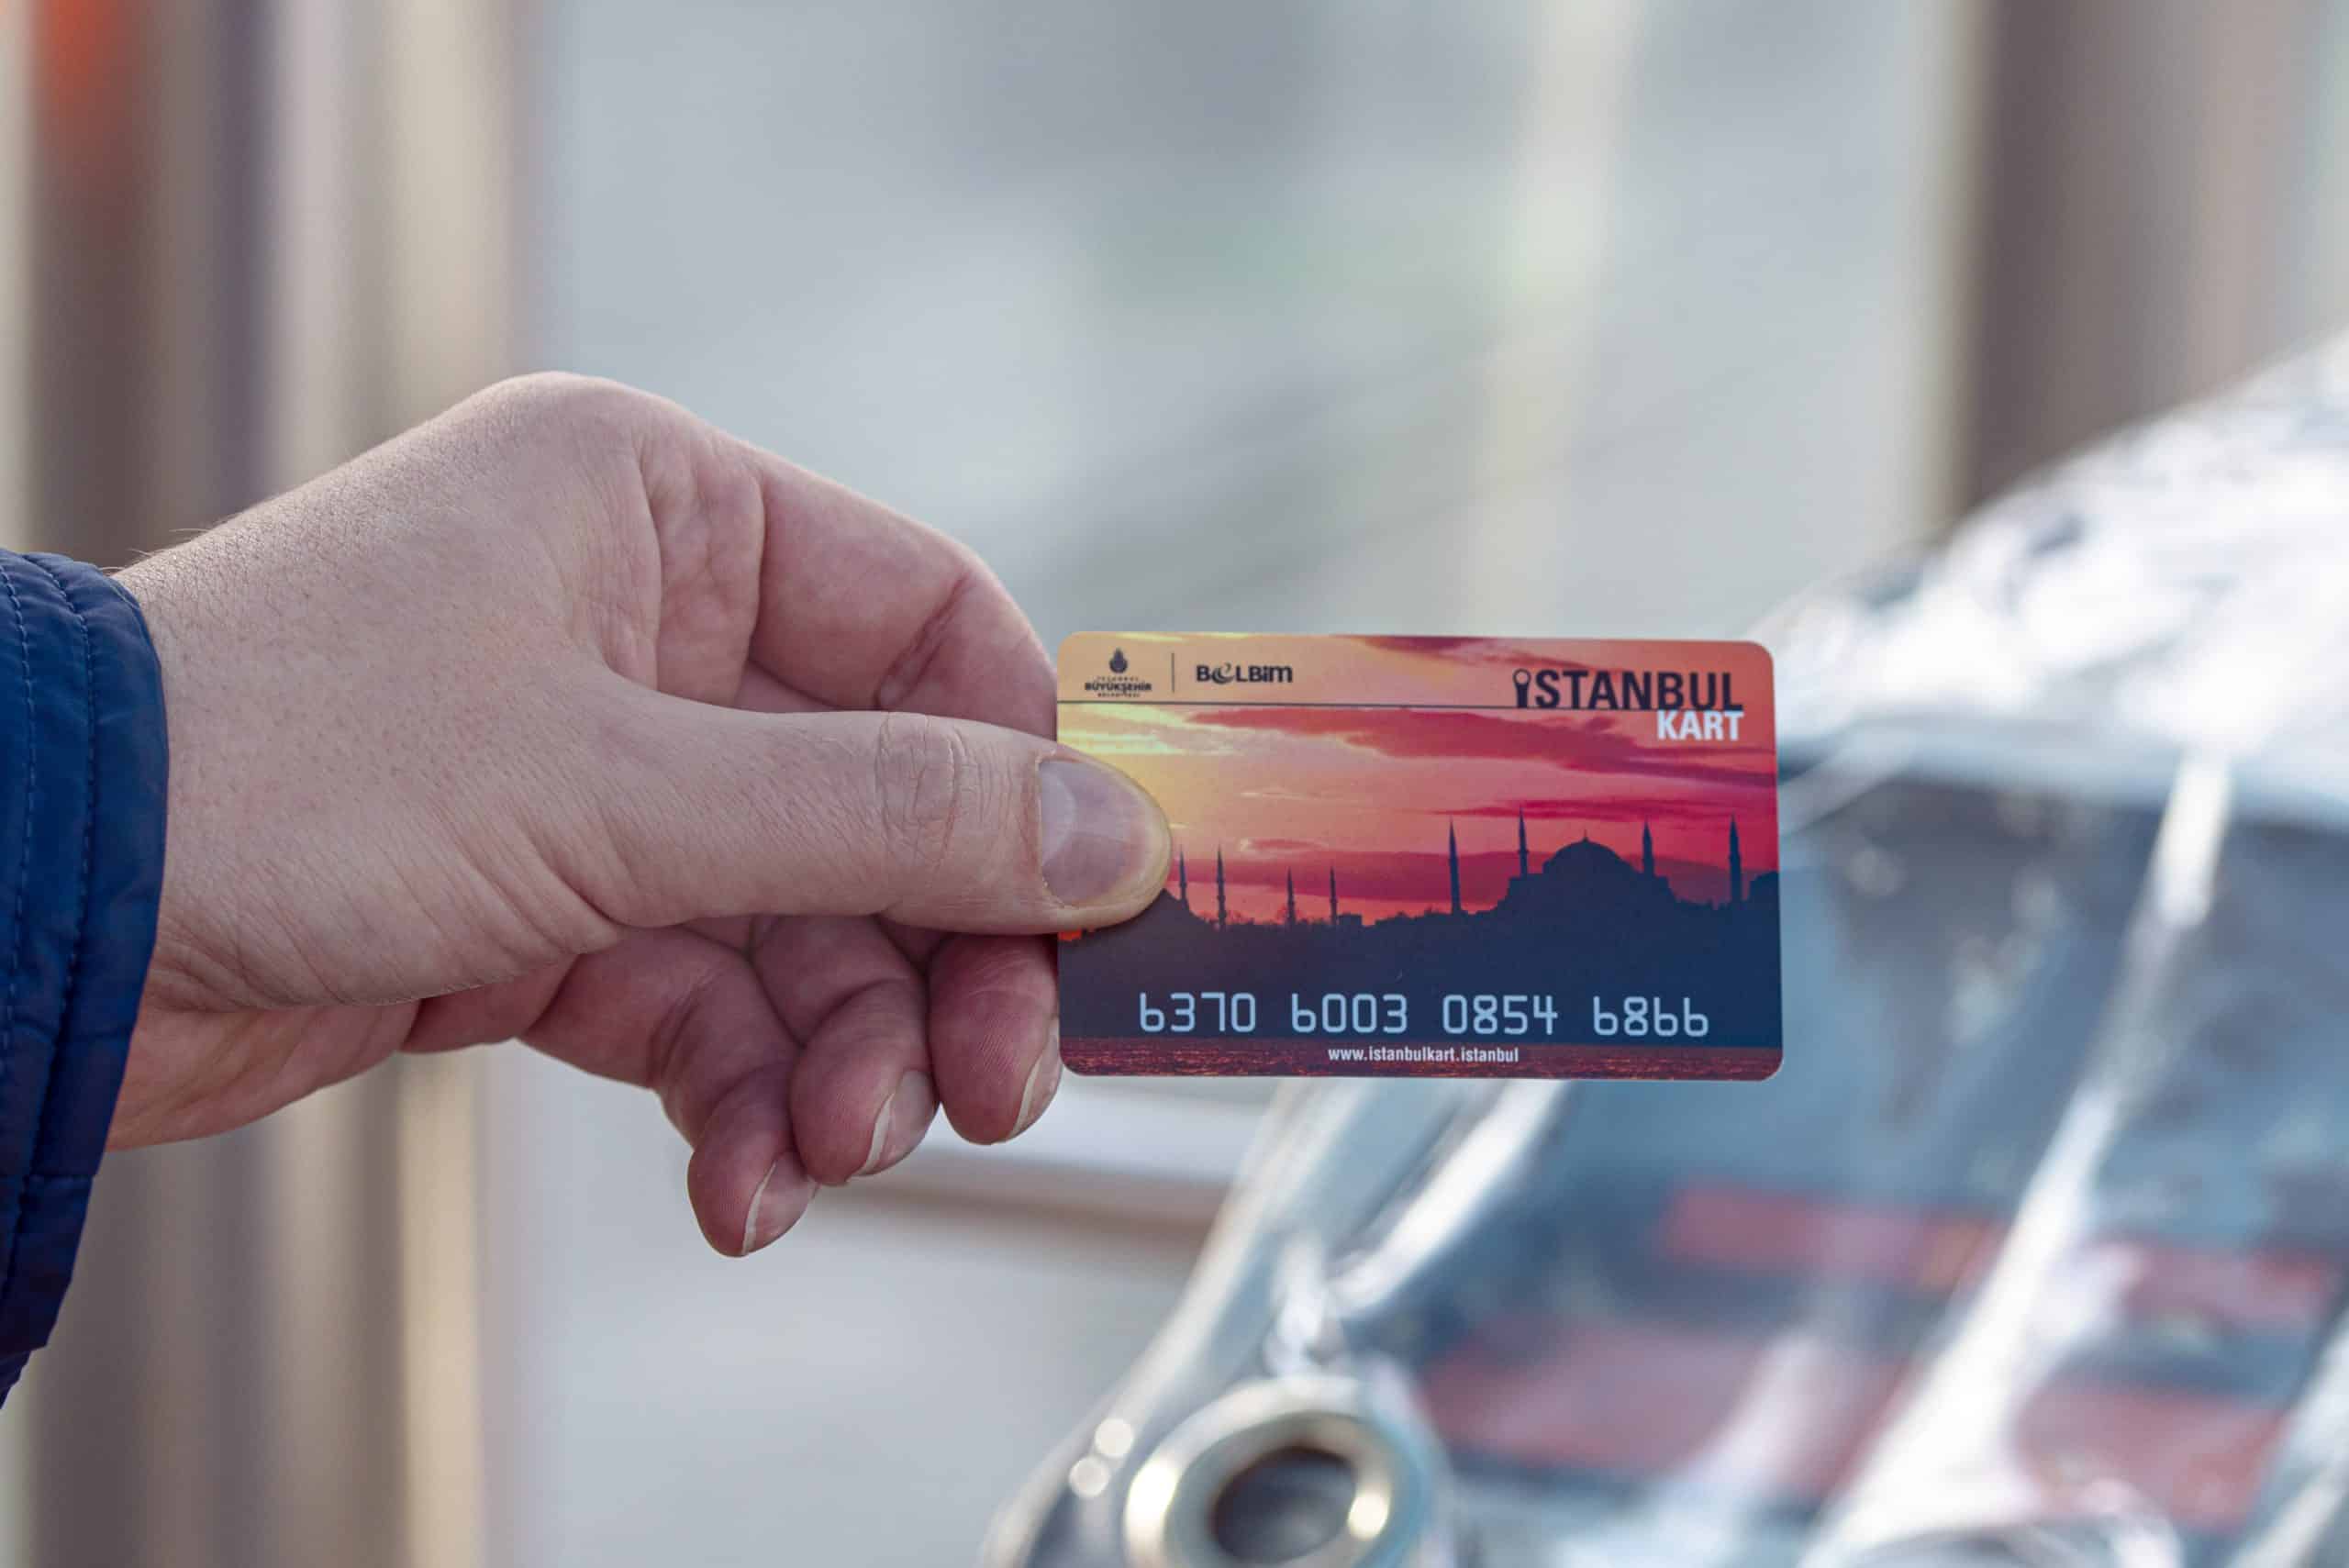 زيادة رسوم شراء بطاقة المواصلات في إسطنبول